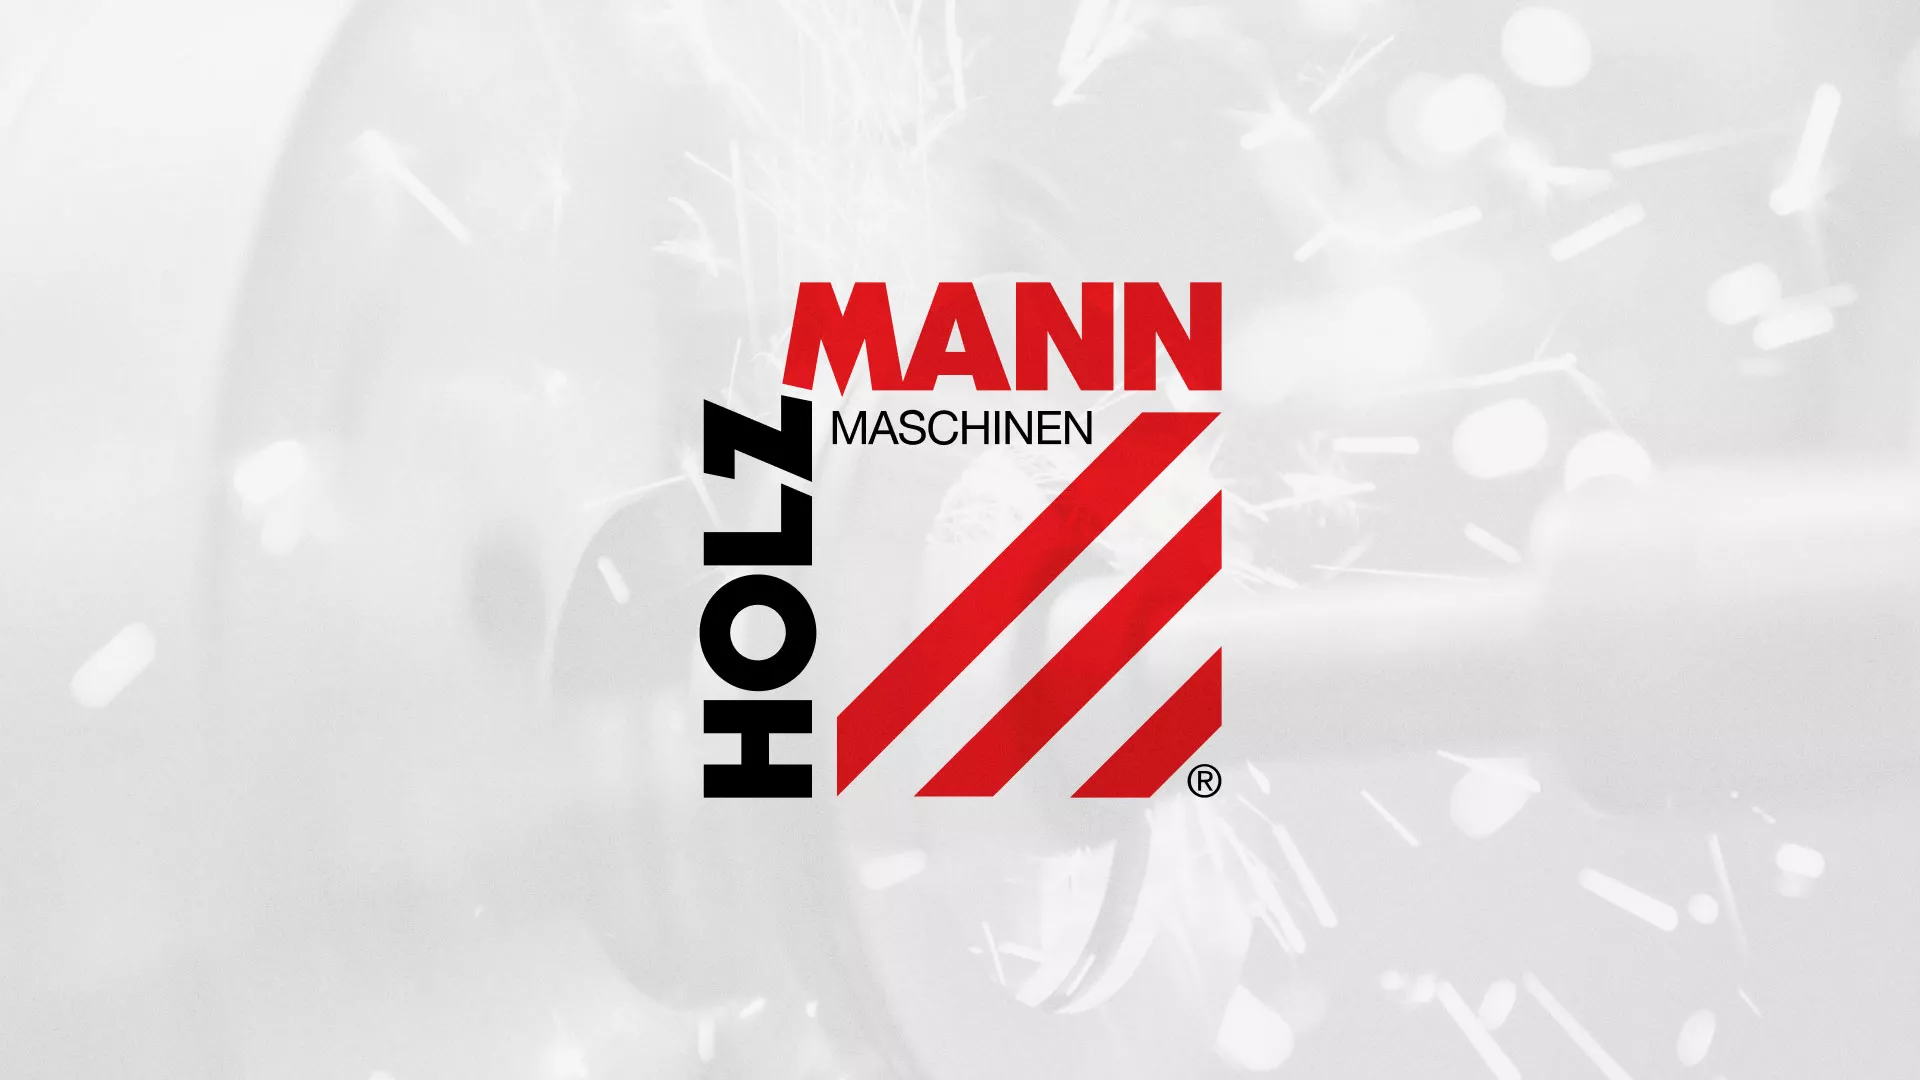 Создание сайта компании «HOLZMANN Maschinen GmbH» в Благодарном